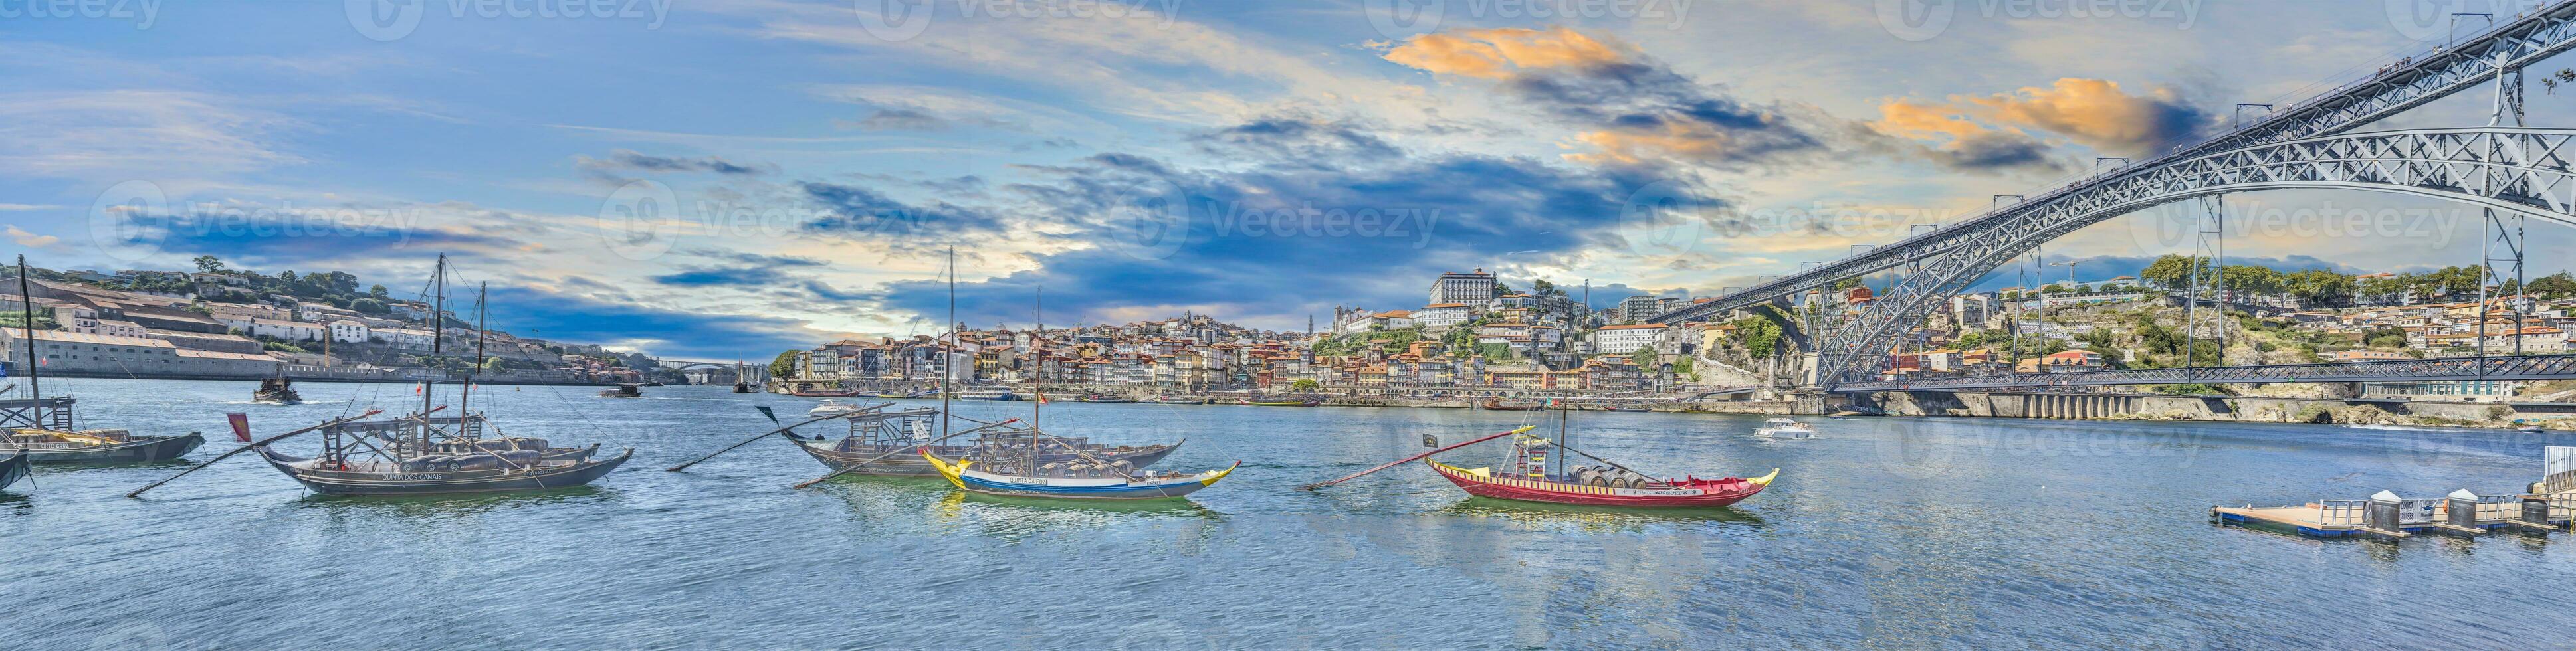 panorámico ver terminado el douro río con el ciudad de porto y el puente ponte dom Luis durante el día foto